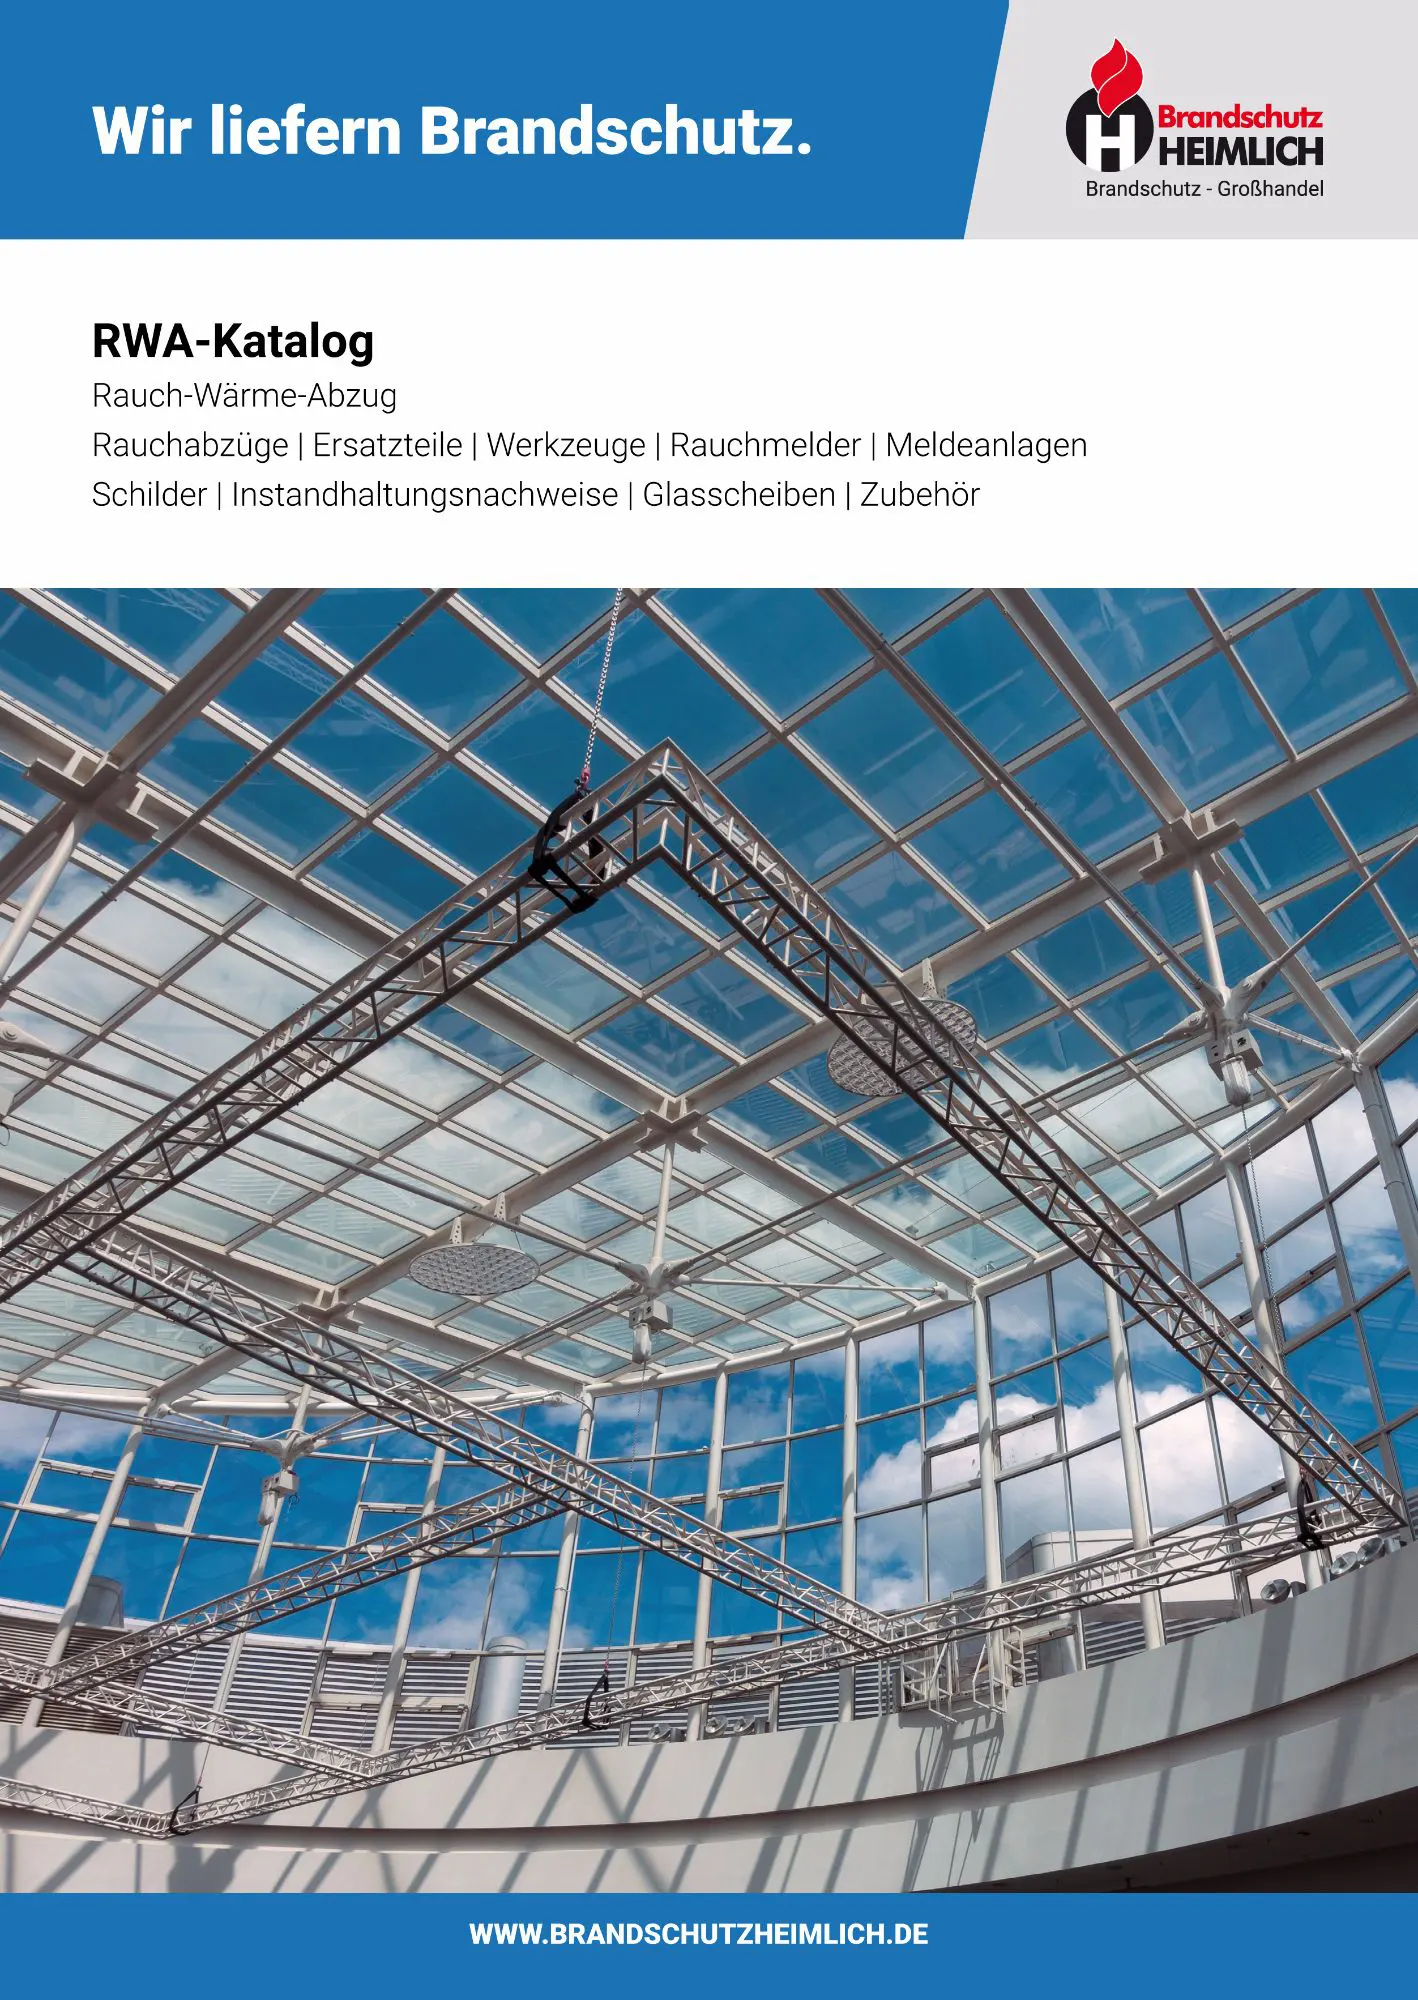 RWA-Katalog der Brandschutz Heimlich GmbH